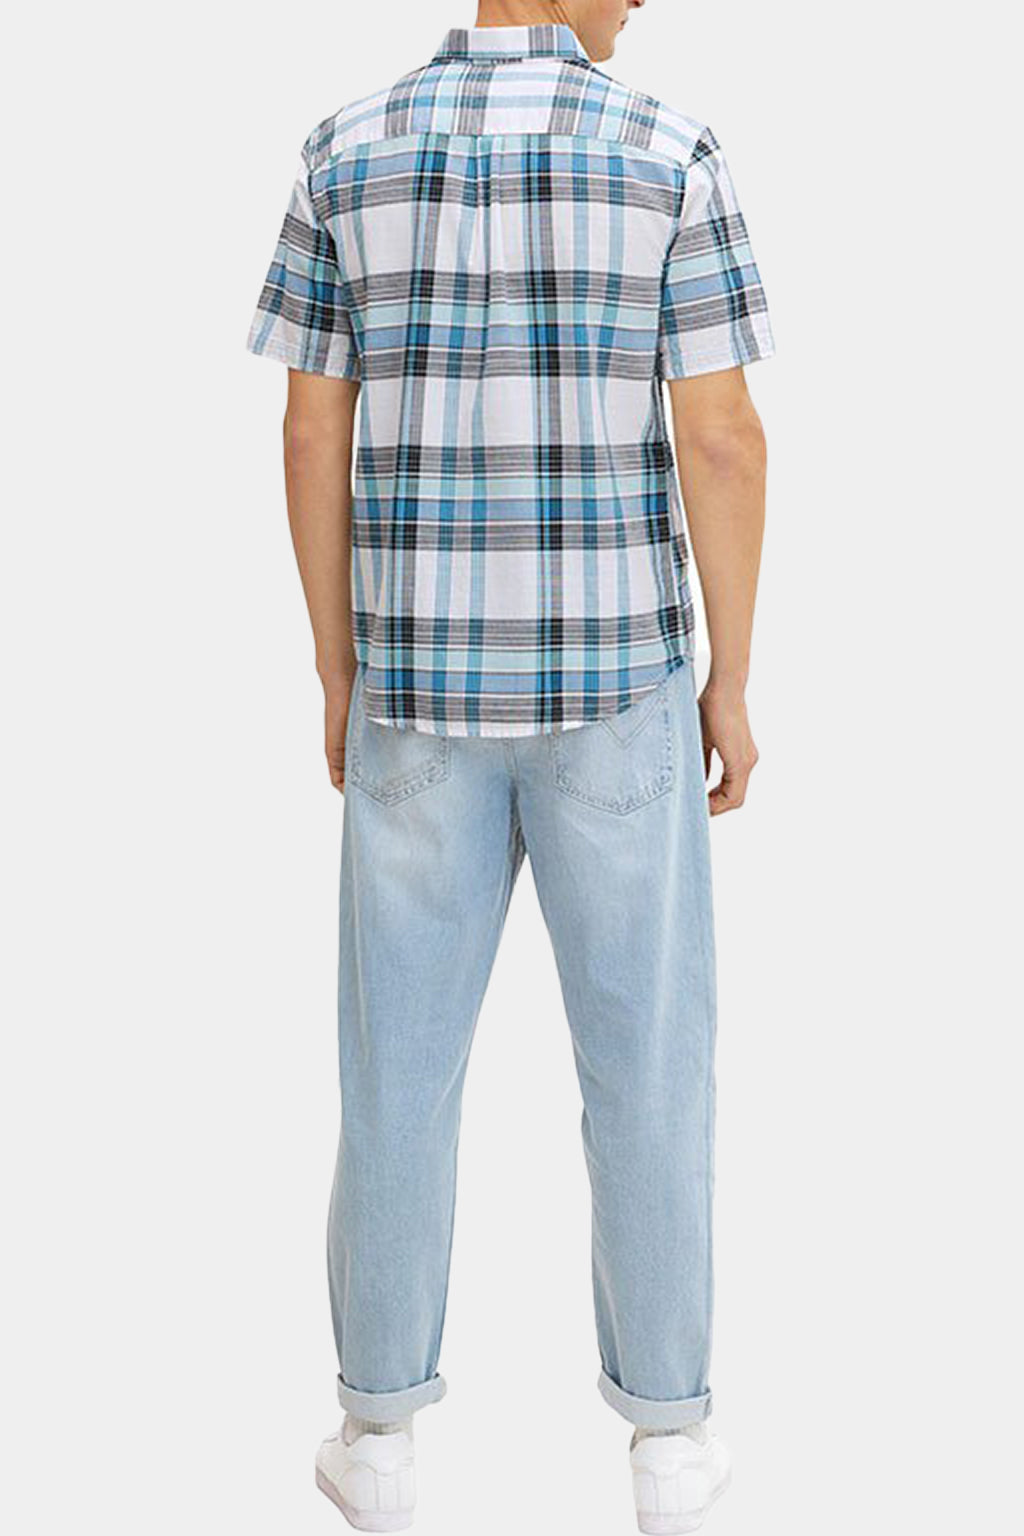 Tom Tailor - Men's Checked Short-sleeved Shirt